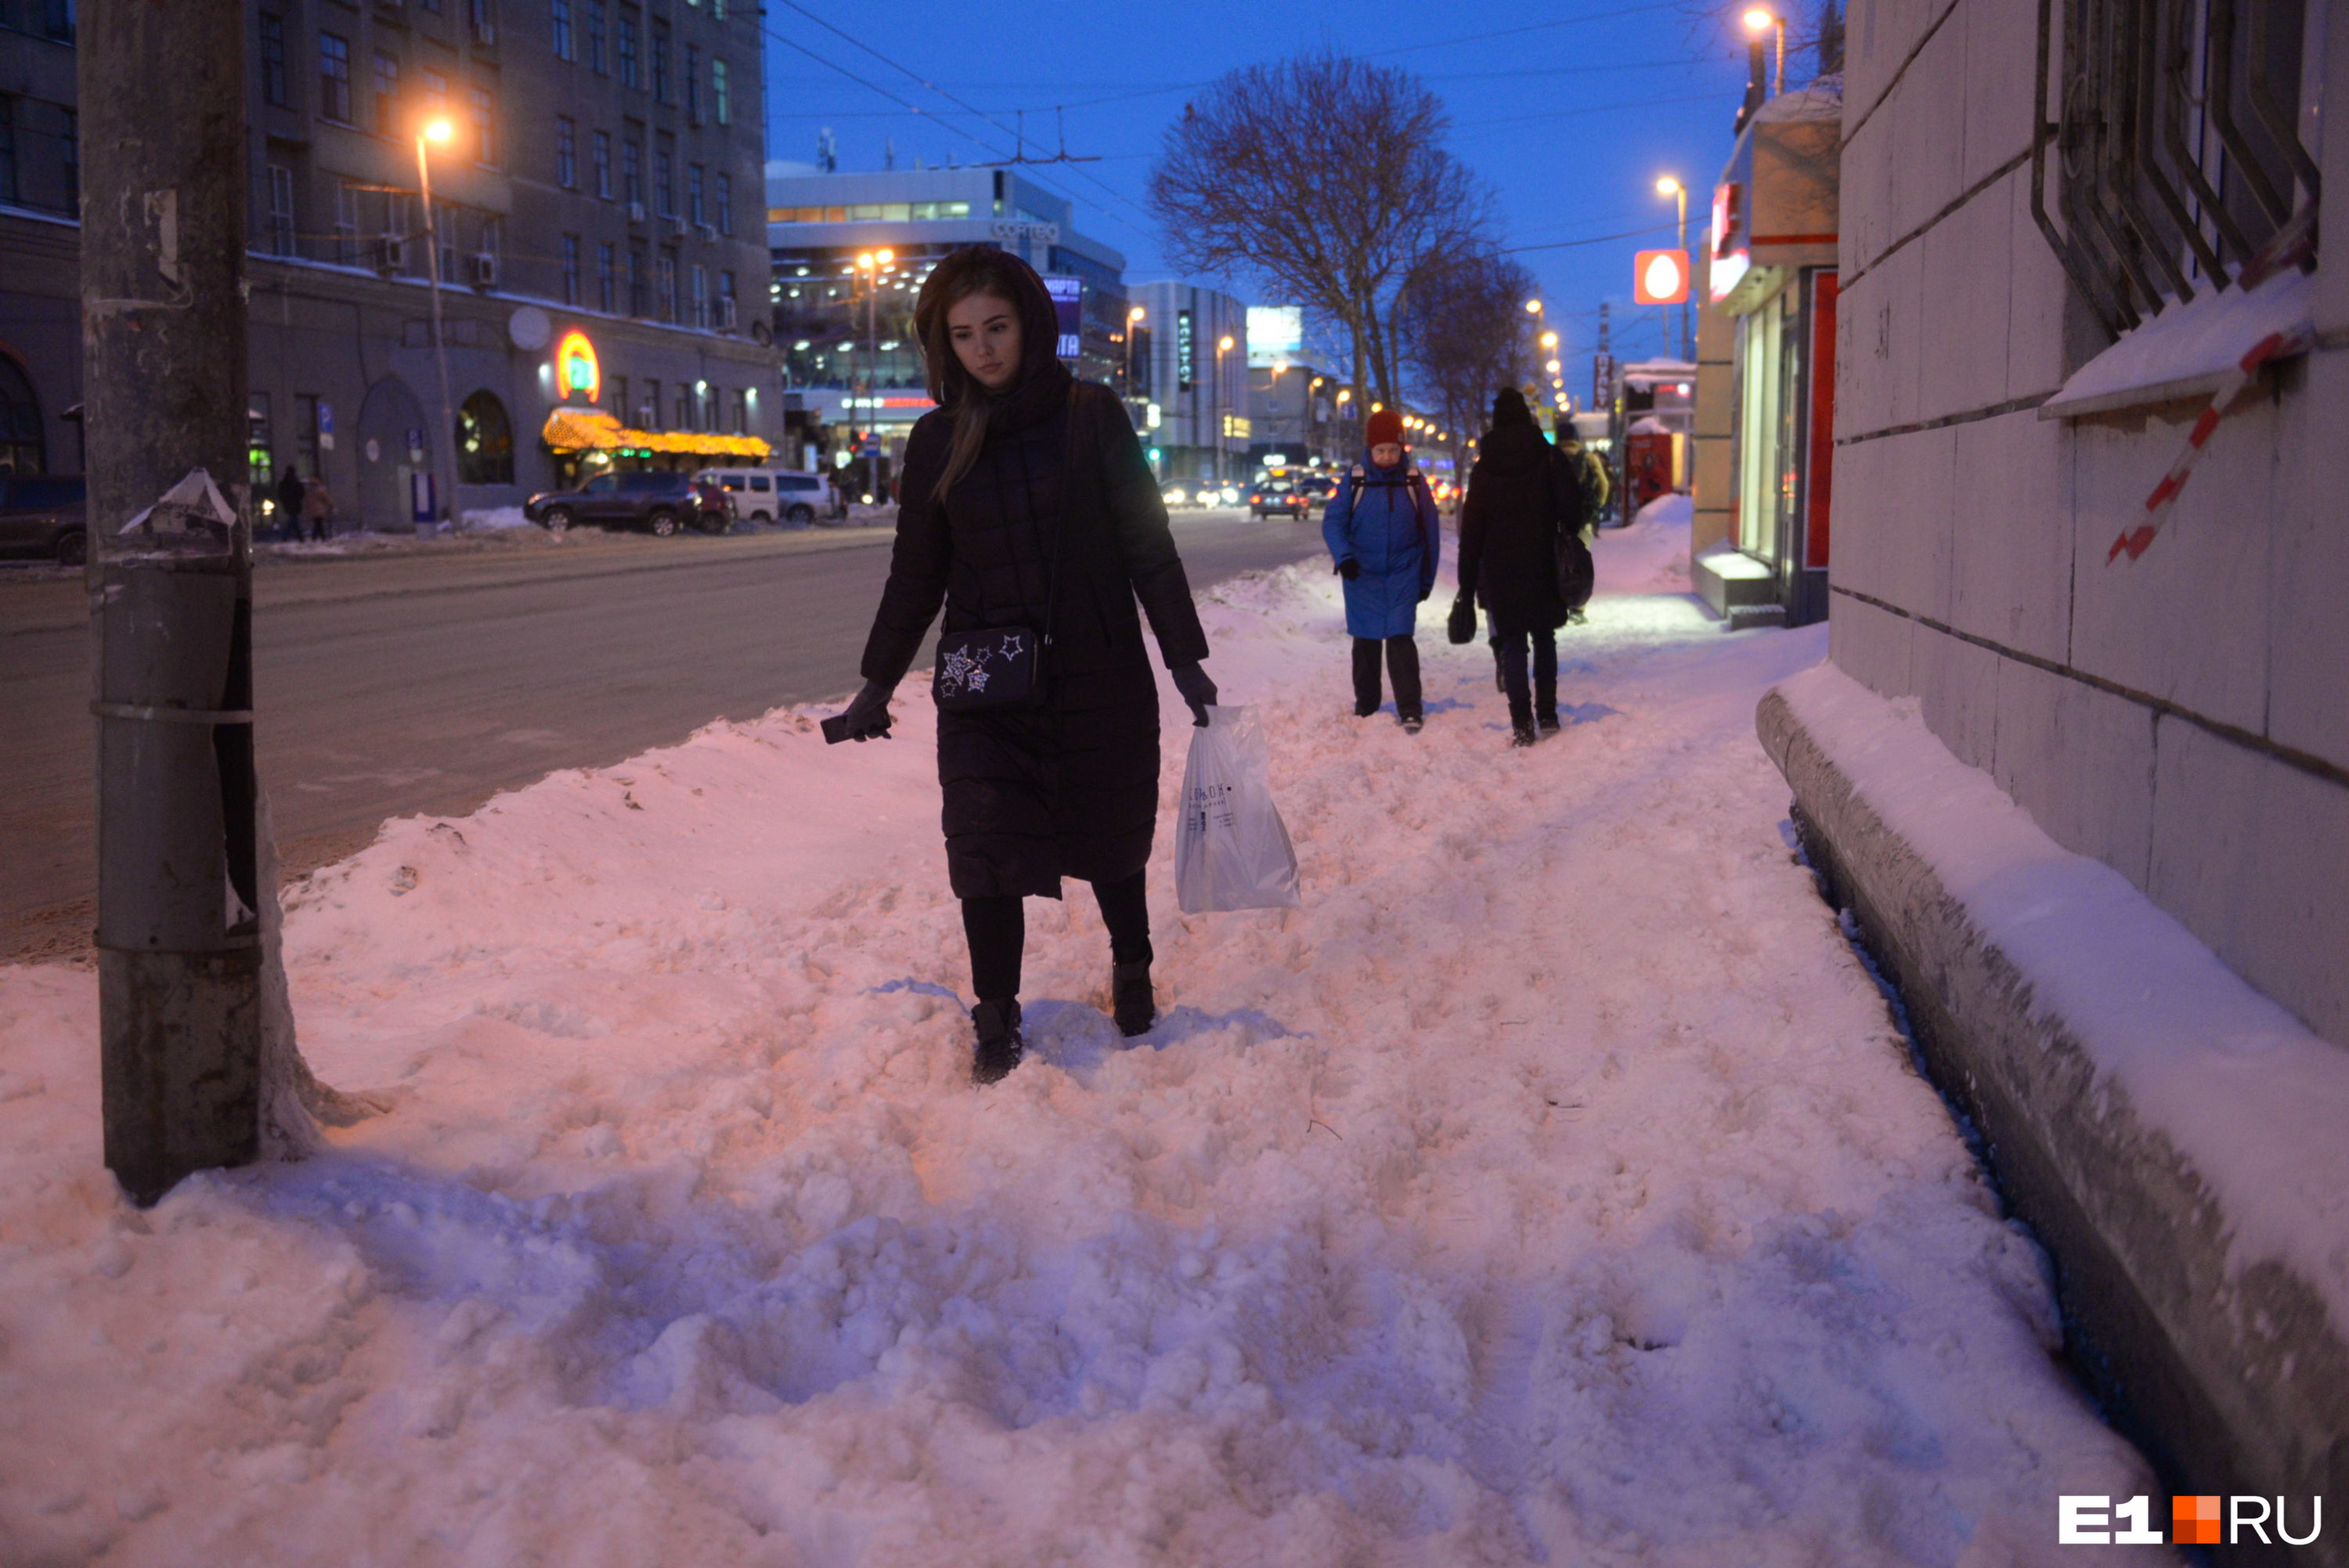 Тротуар на улице Малышева 11 февраля 2019 года. В тот день снегопада не было